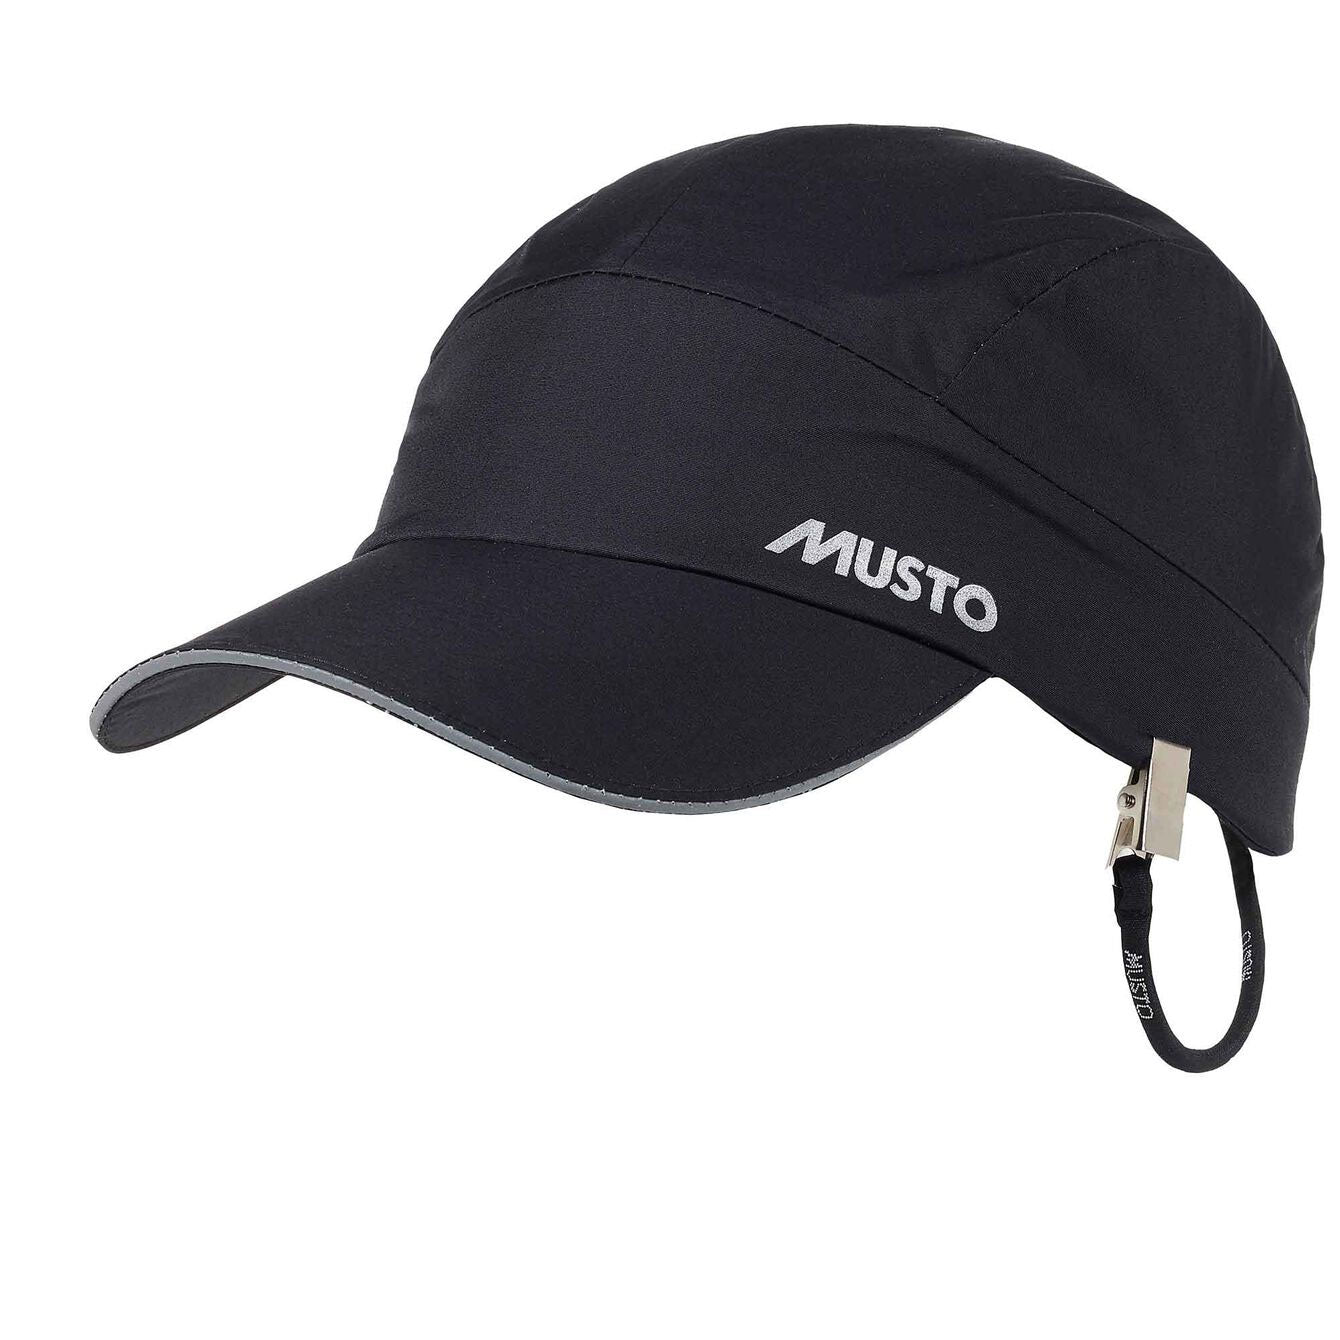 Musto Performance Waterproof Cap | Black